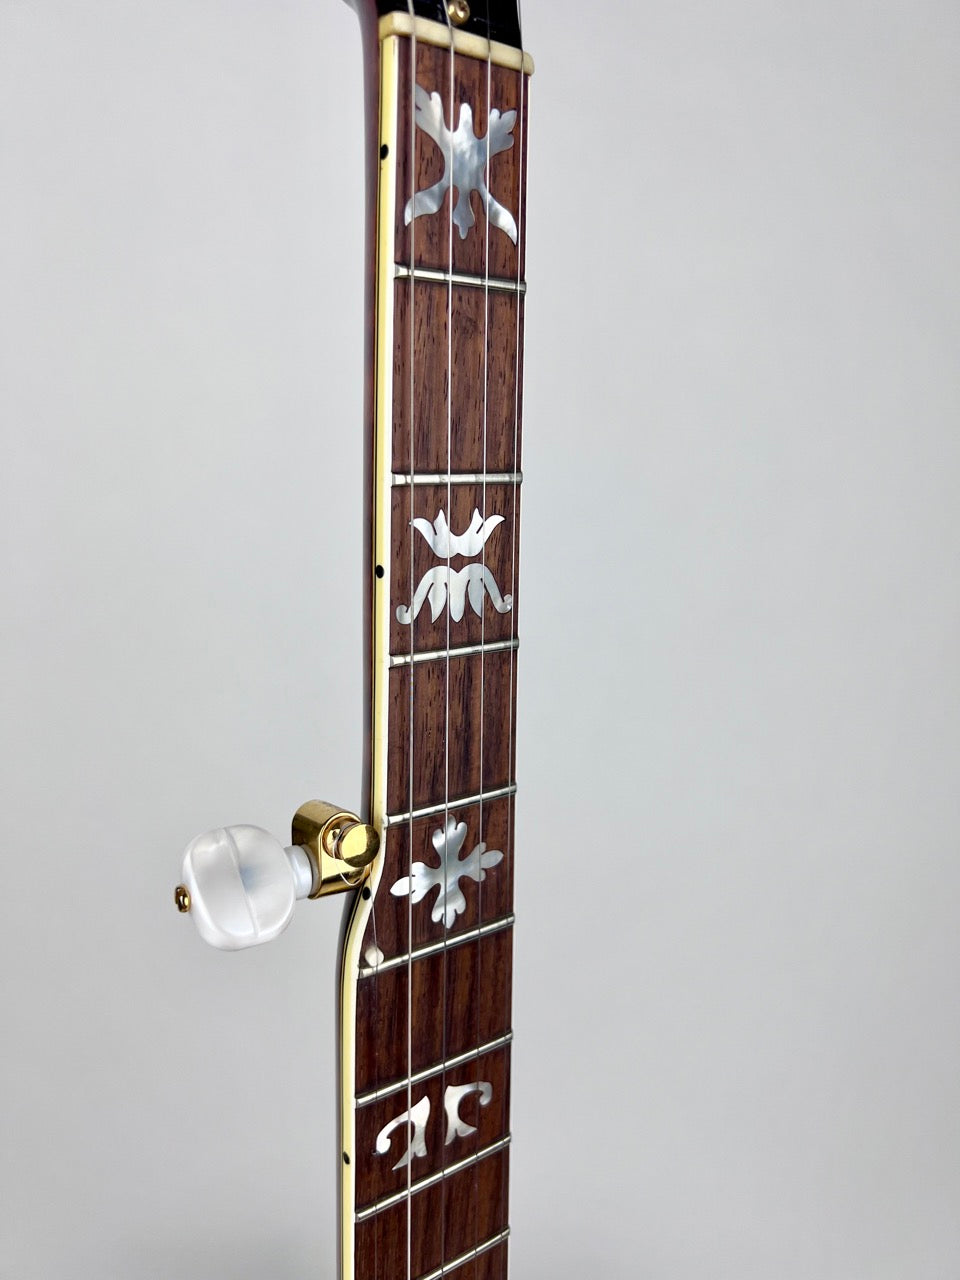 1997 Gibson Grenada Banjo